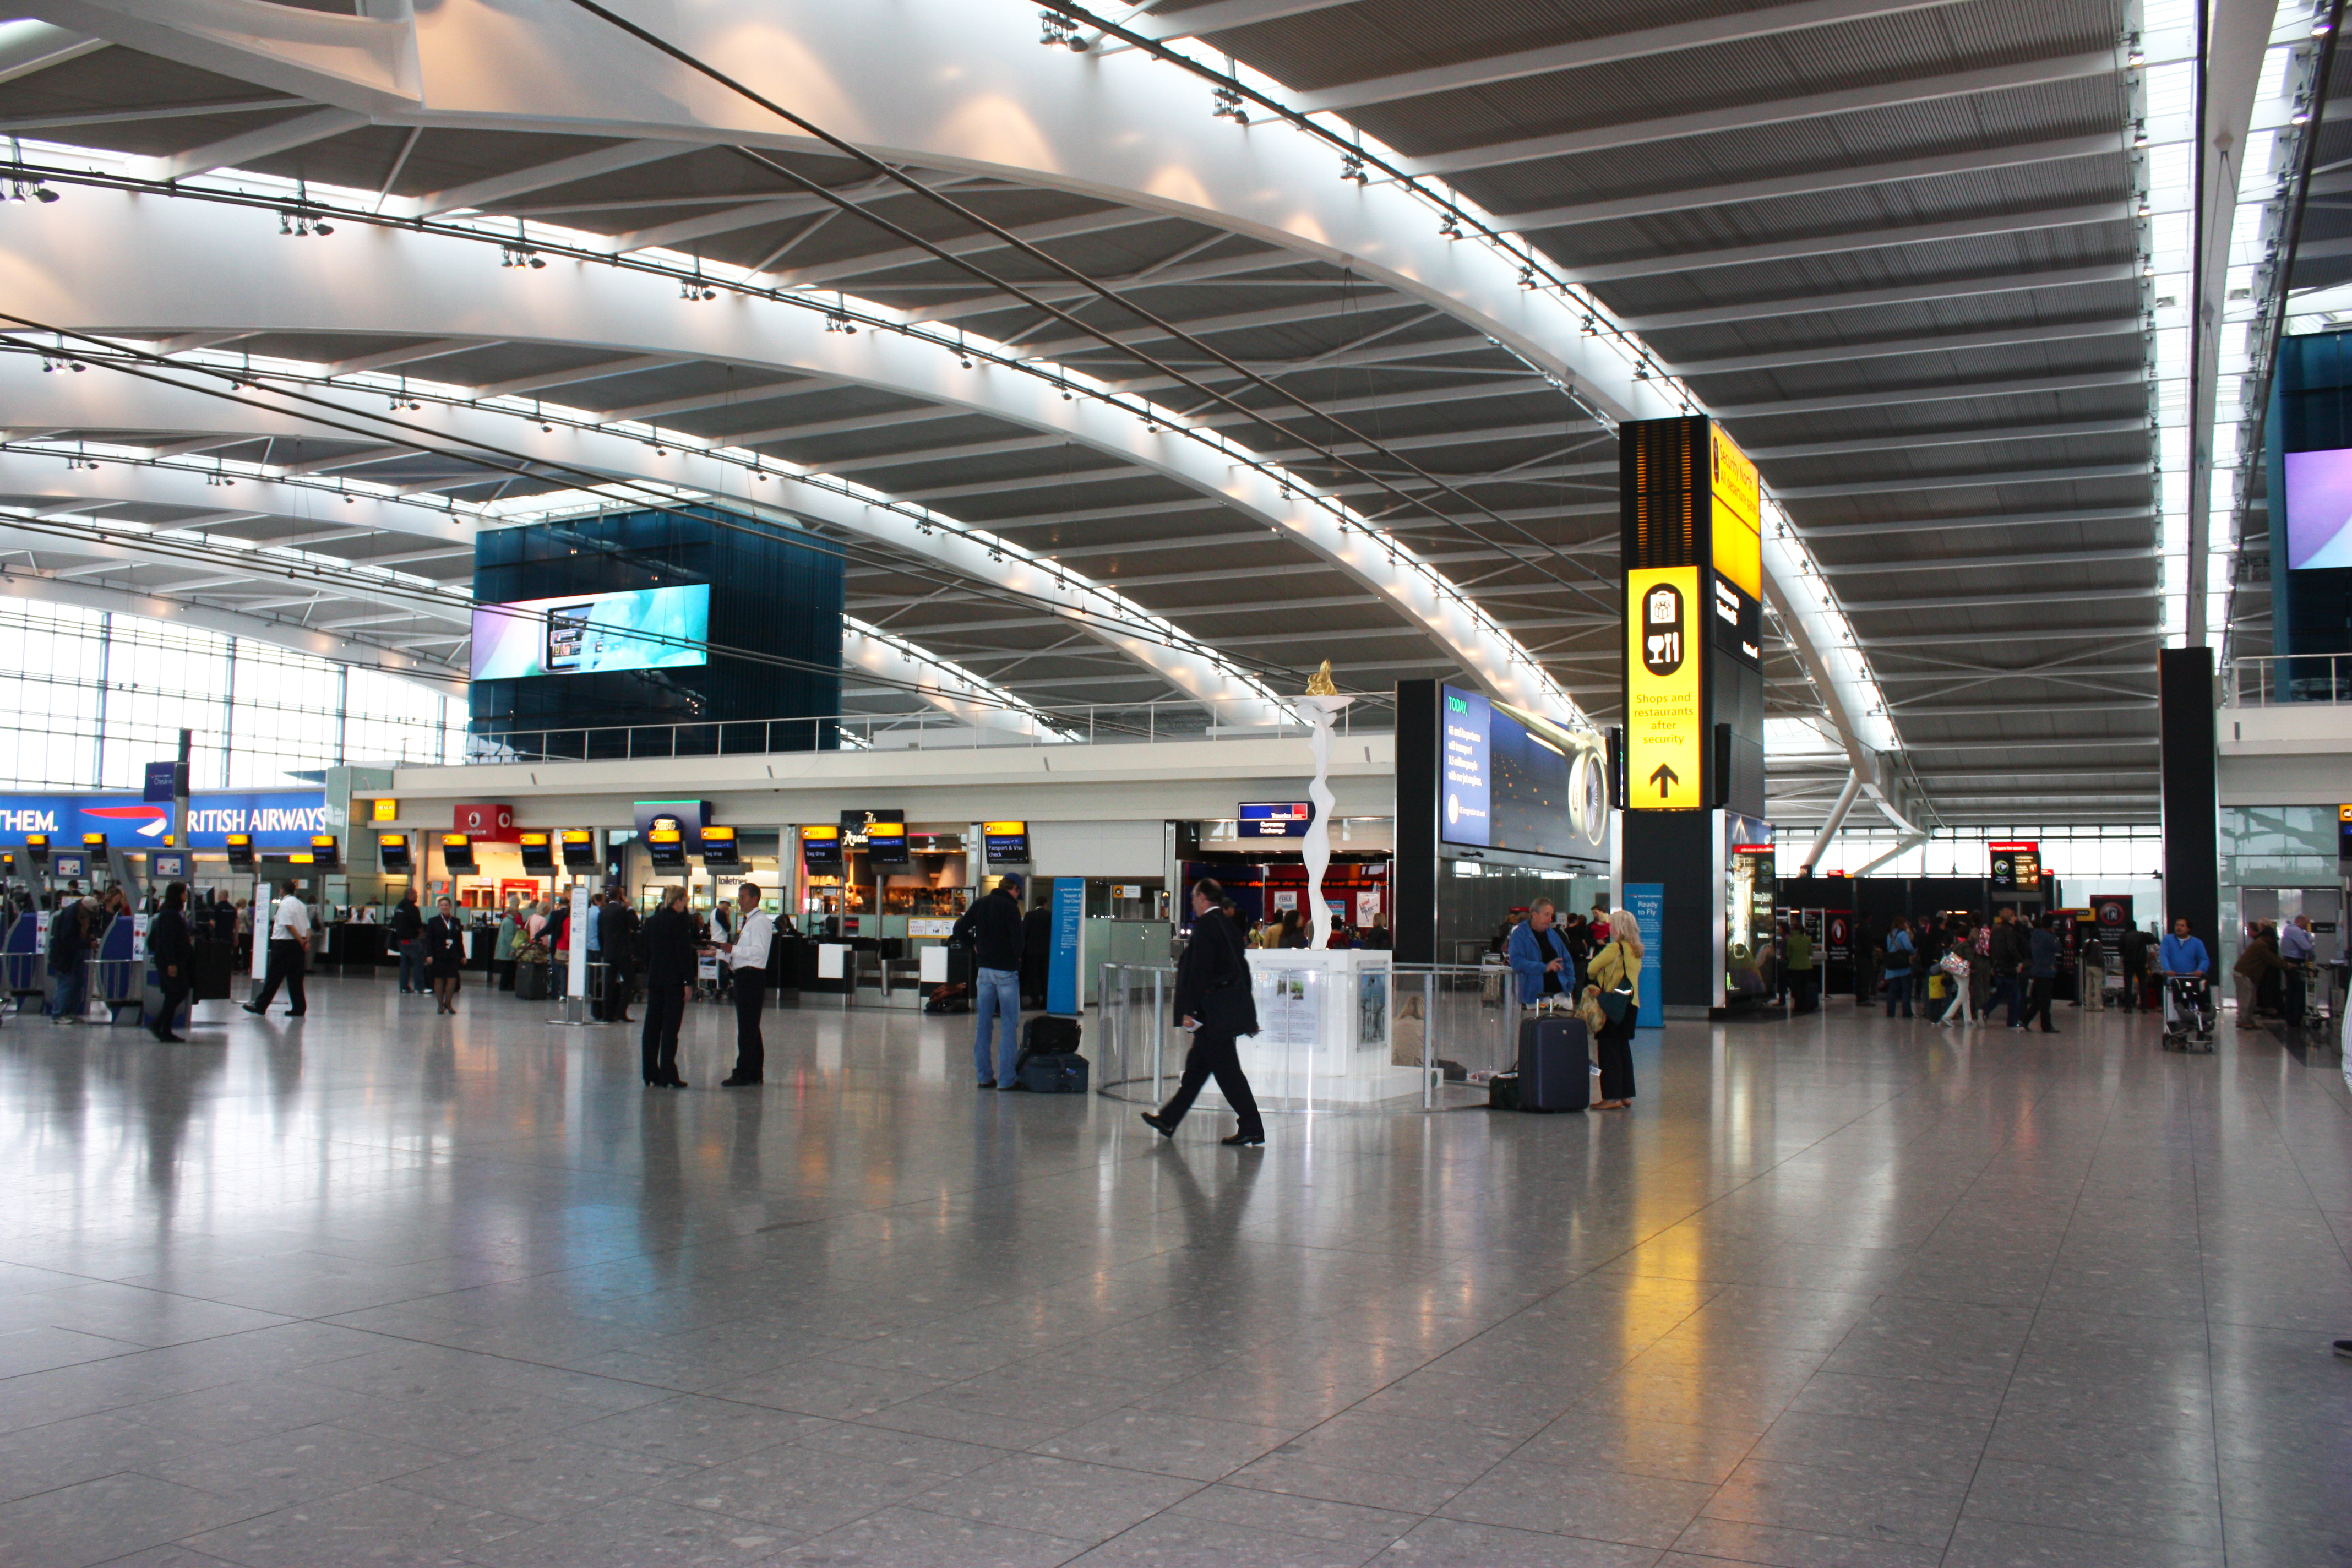 Pilot prins băut la manşă pe aeroportul Heathrow